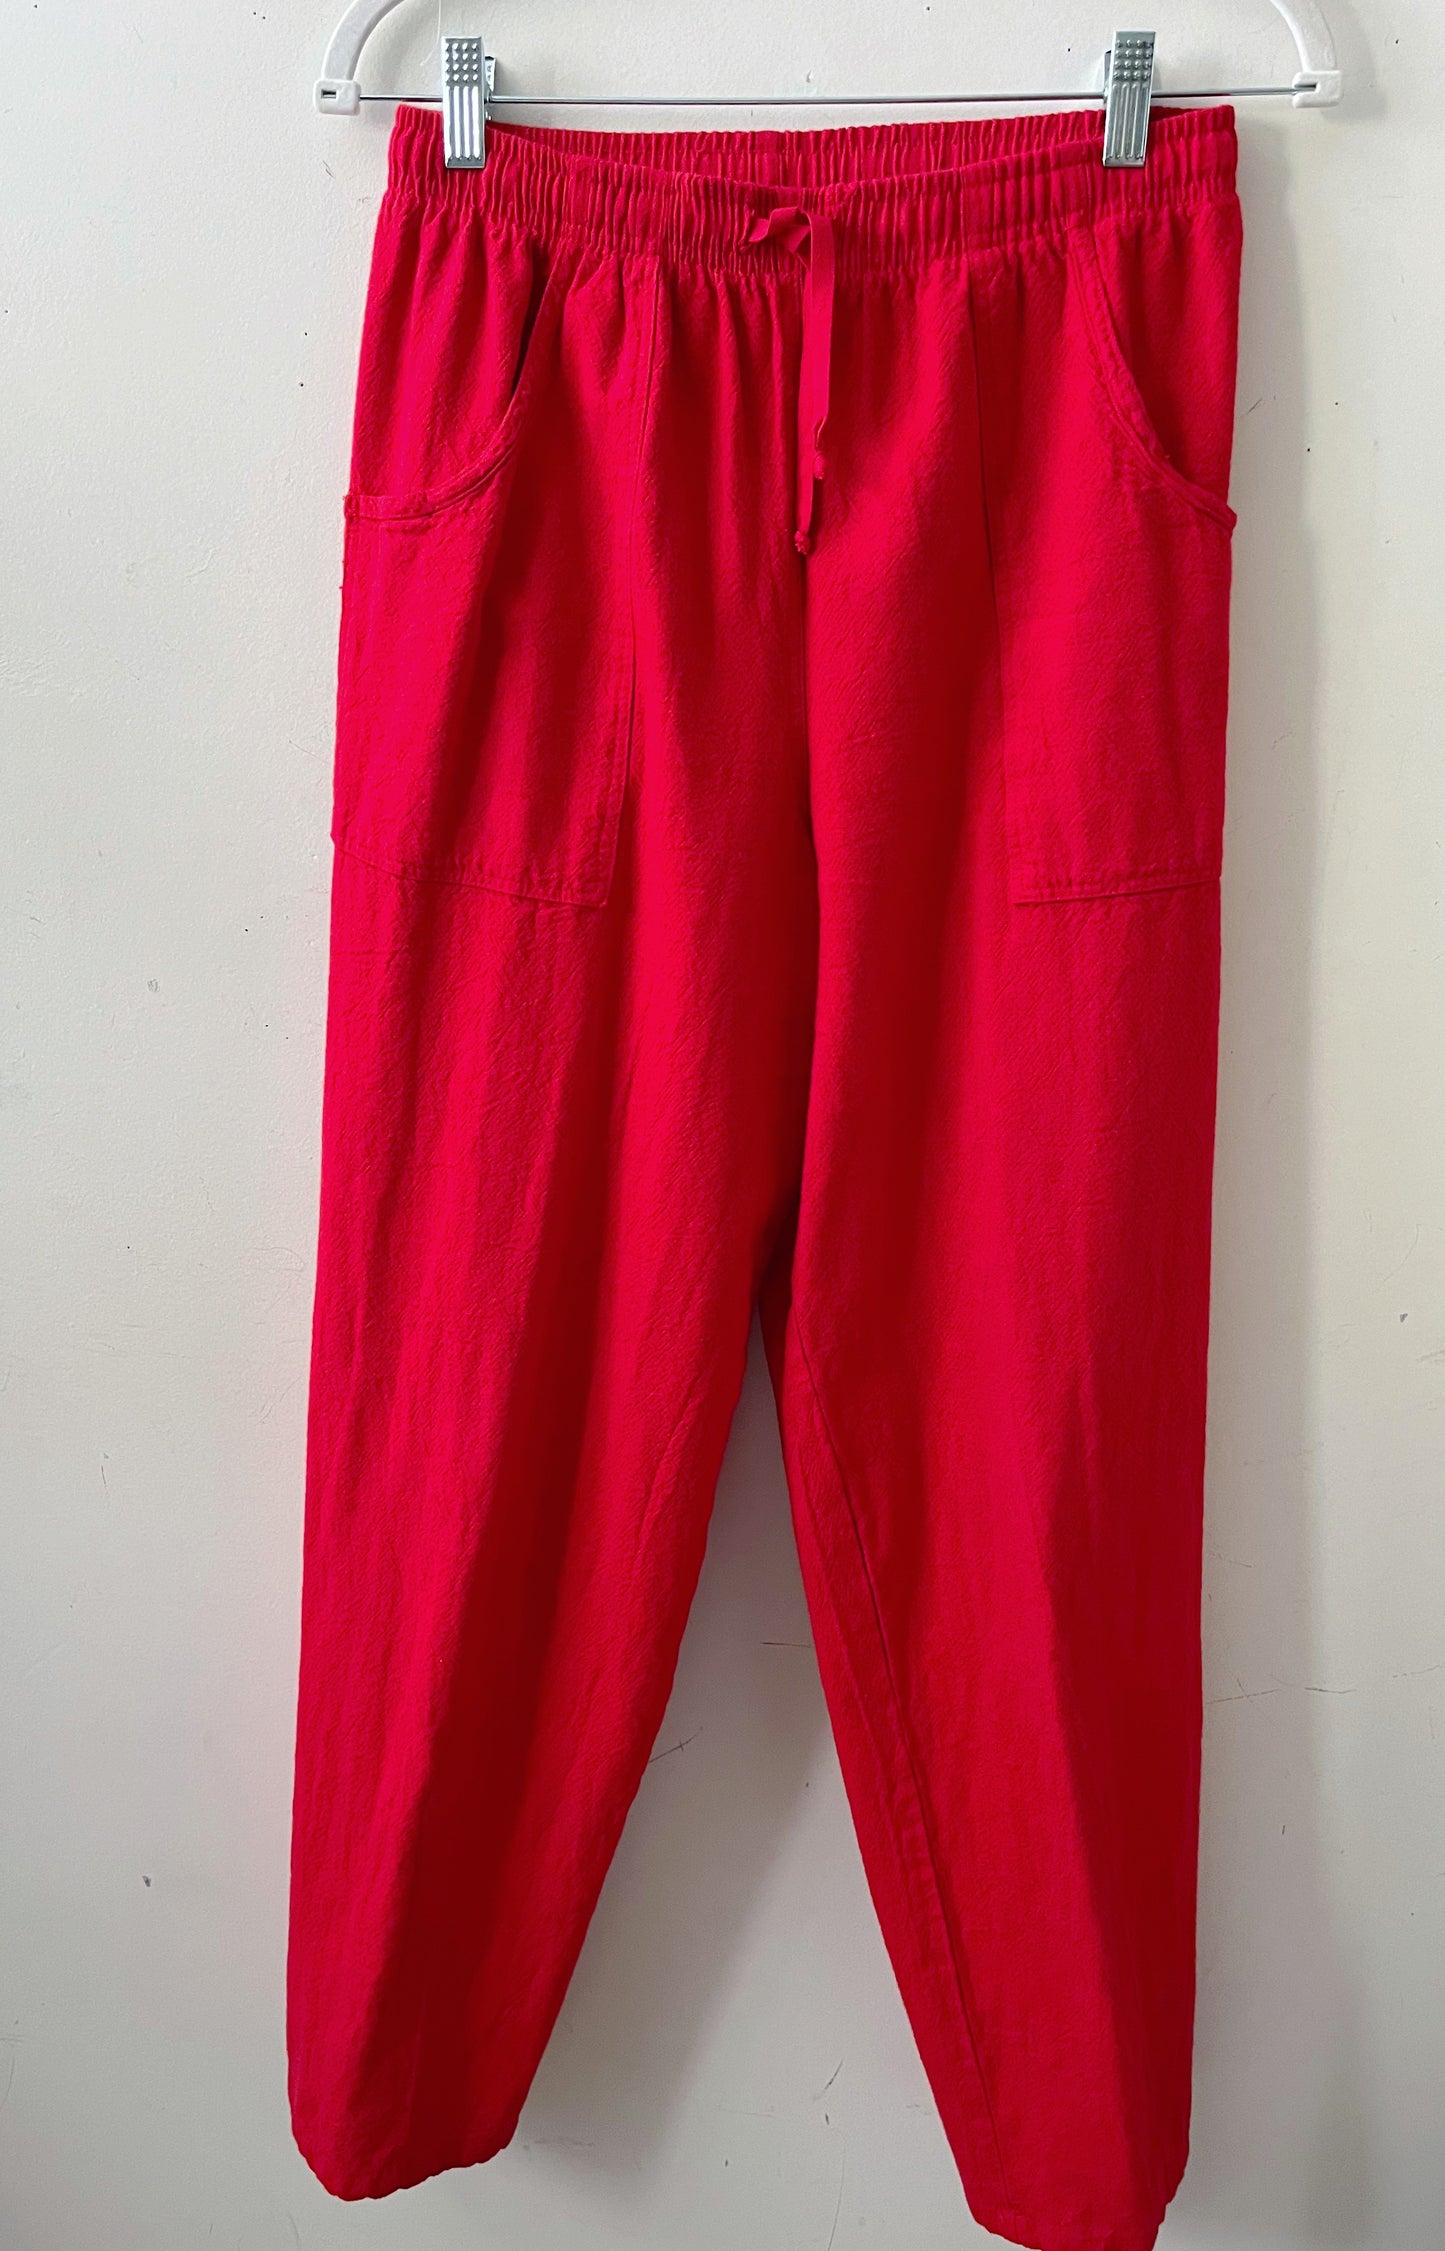 Cotton Canvas Top & Pants Set- Red| S/M